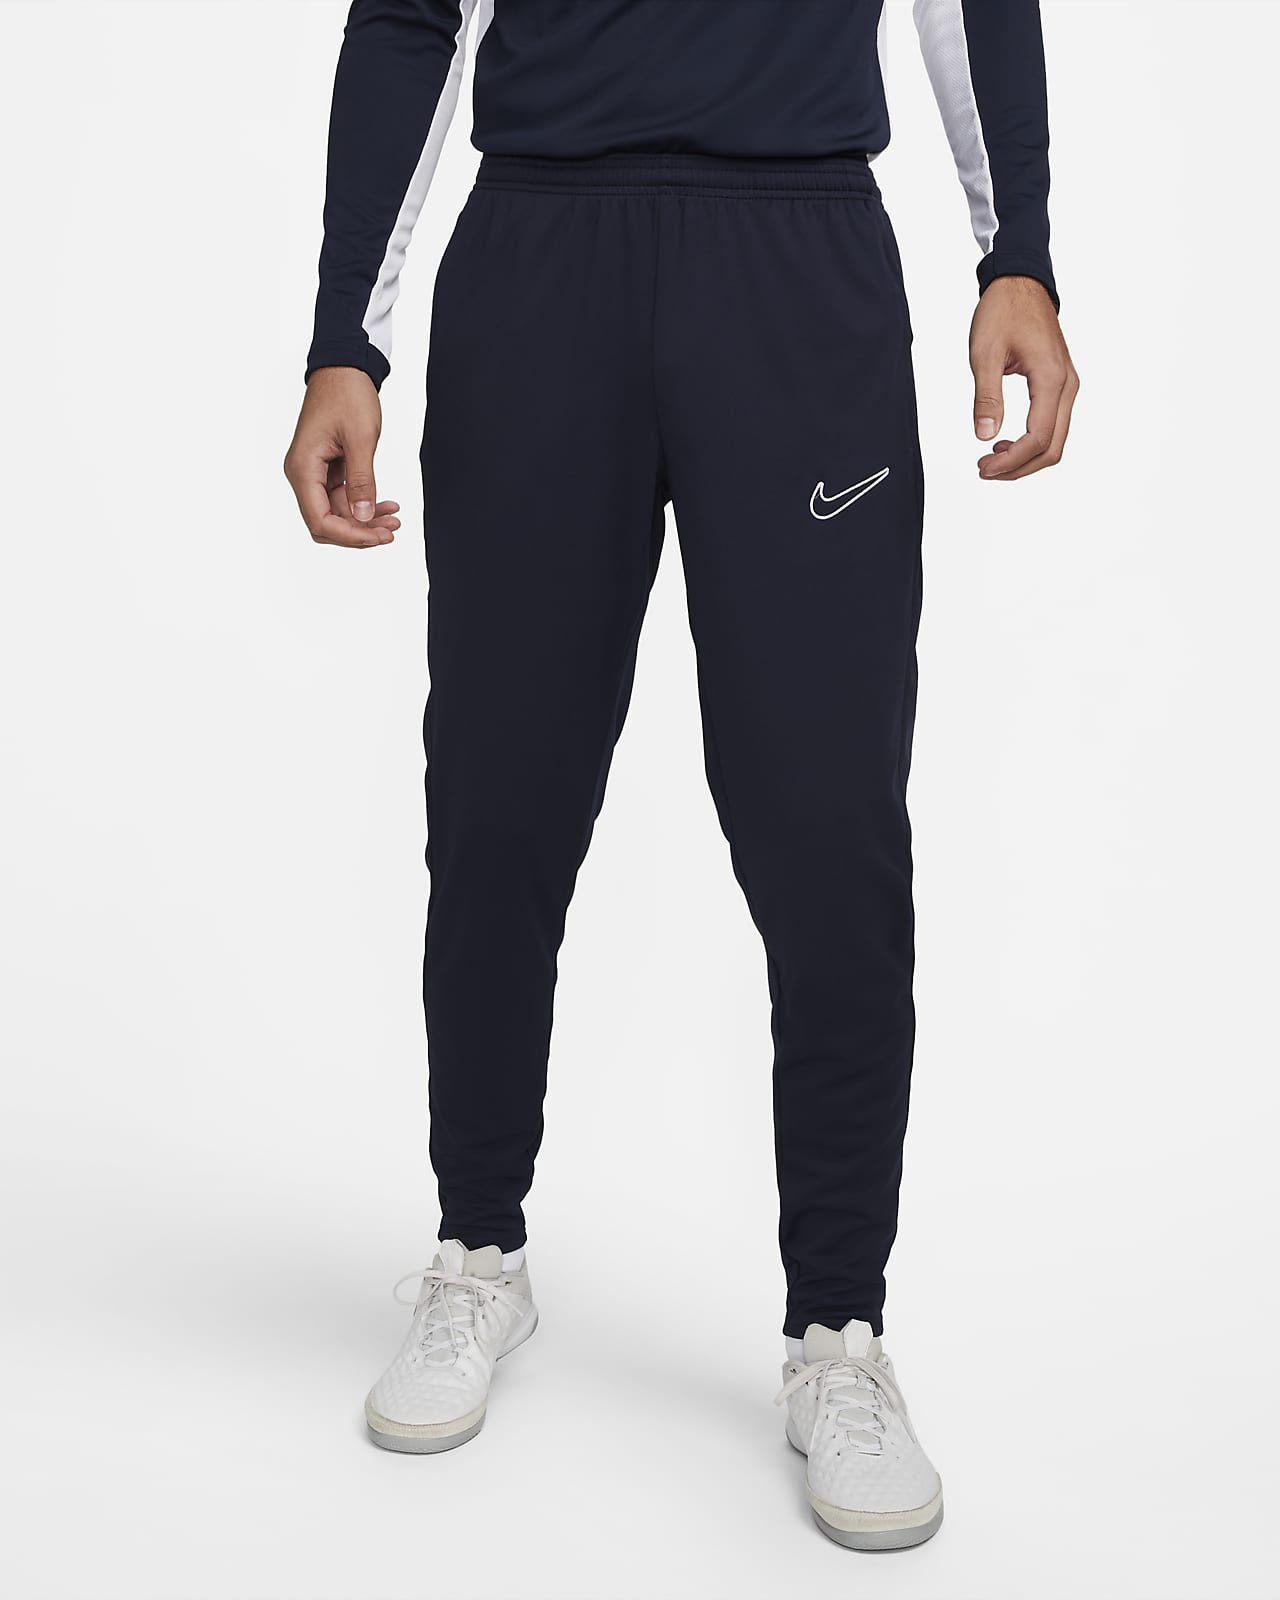 Pantalon de foot Nike Dri-FIT Academy pour homme